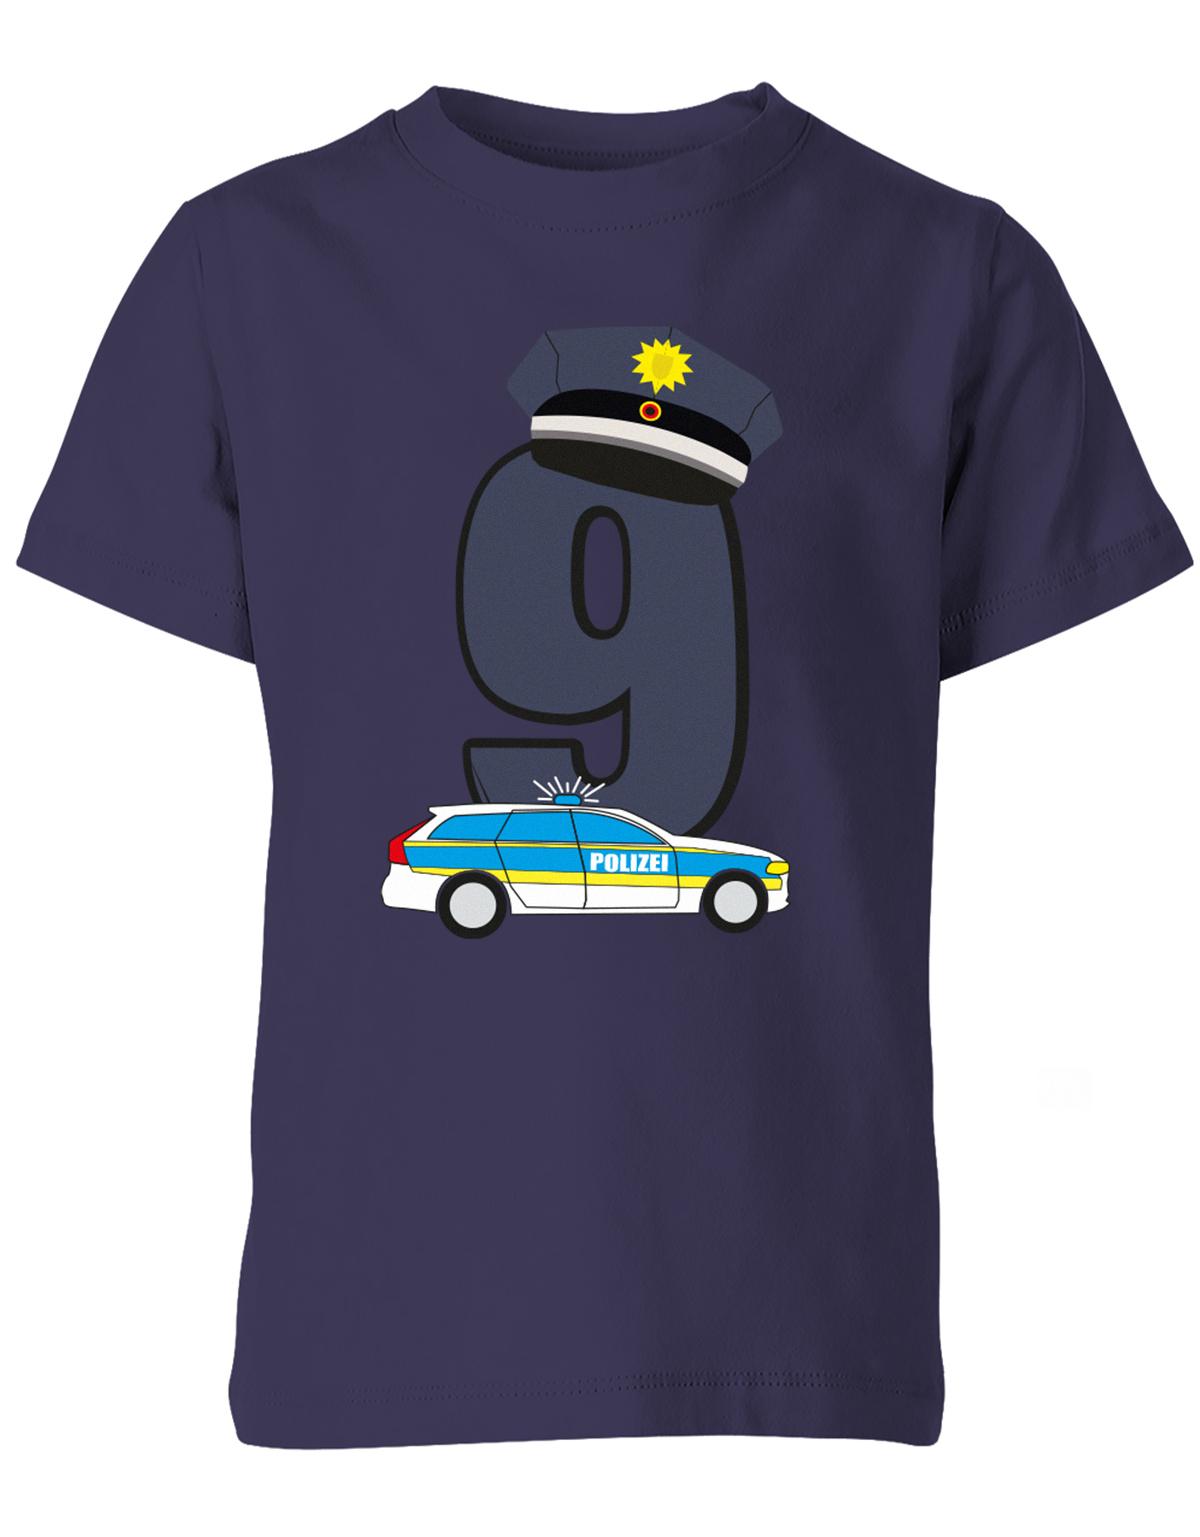 ich-bin-9-polizei-geburtstag-kinder-shirt-navy